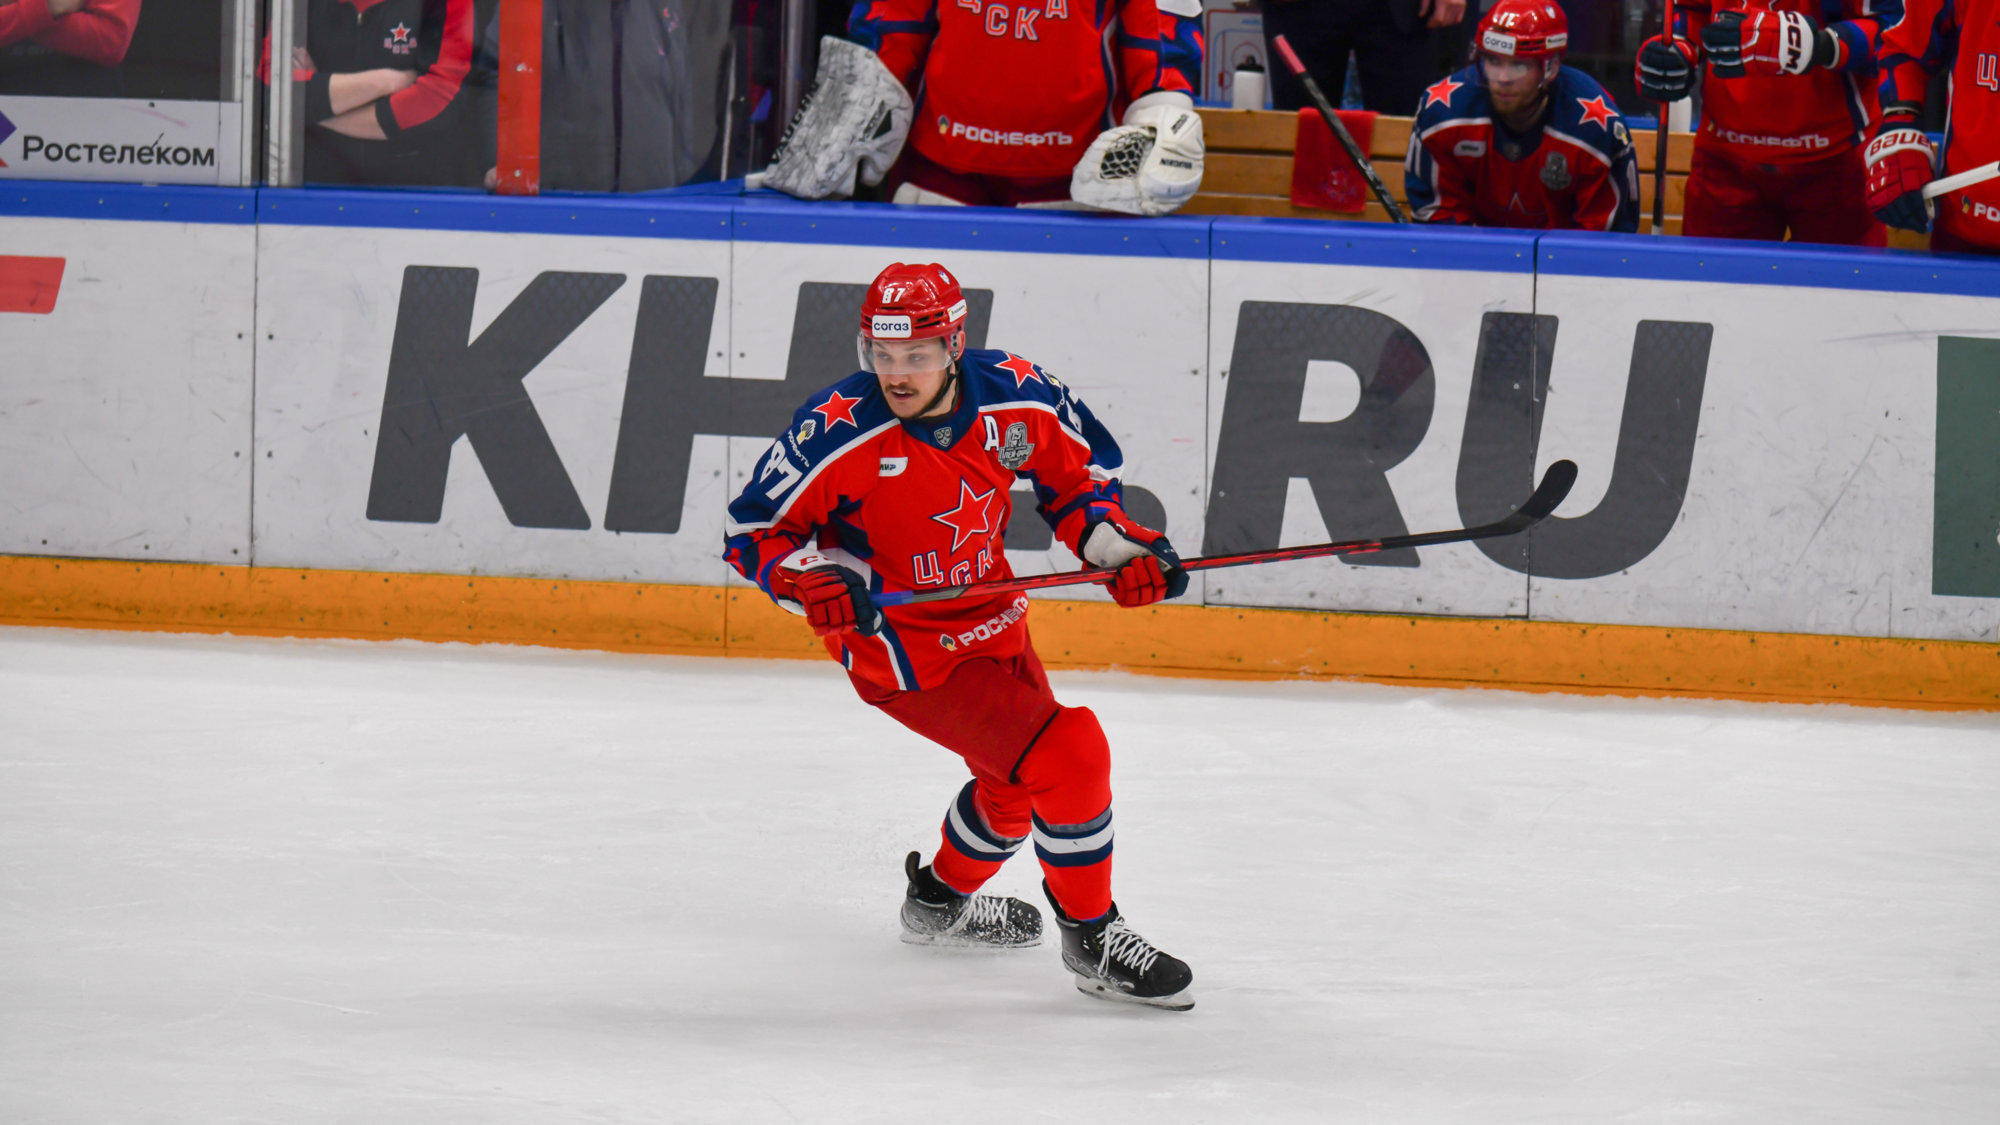 Хоккеист Светлаков рассказал, почему решил не переходить в ярославский «Локомотив»